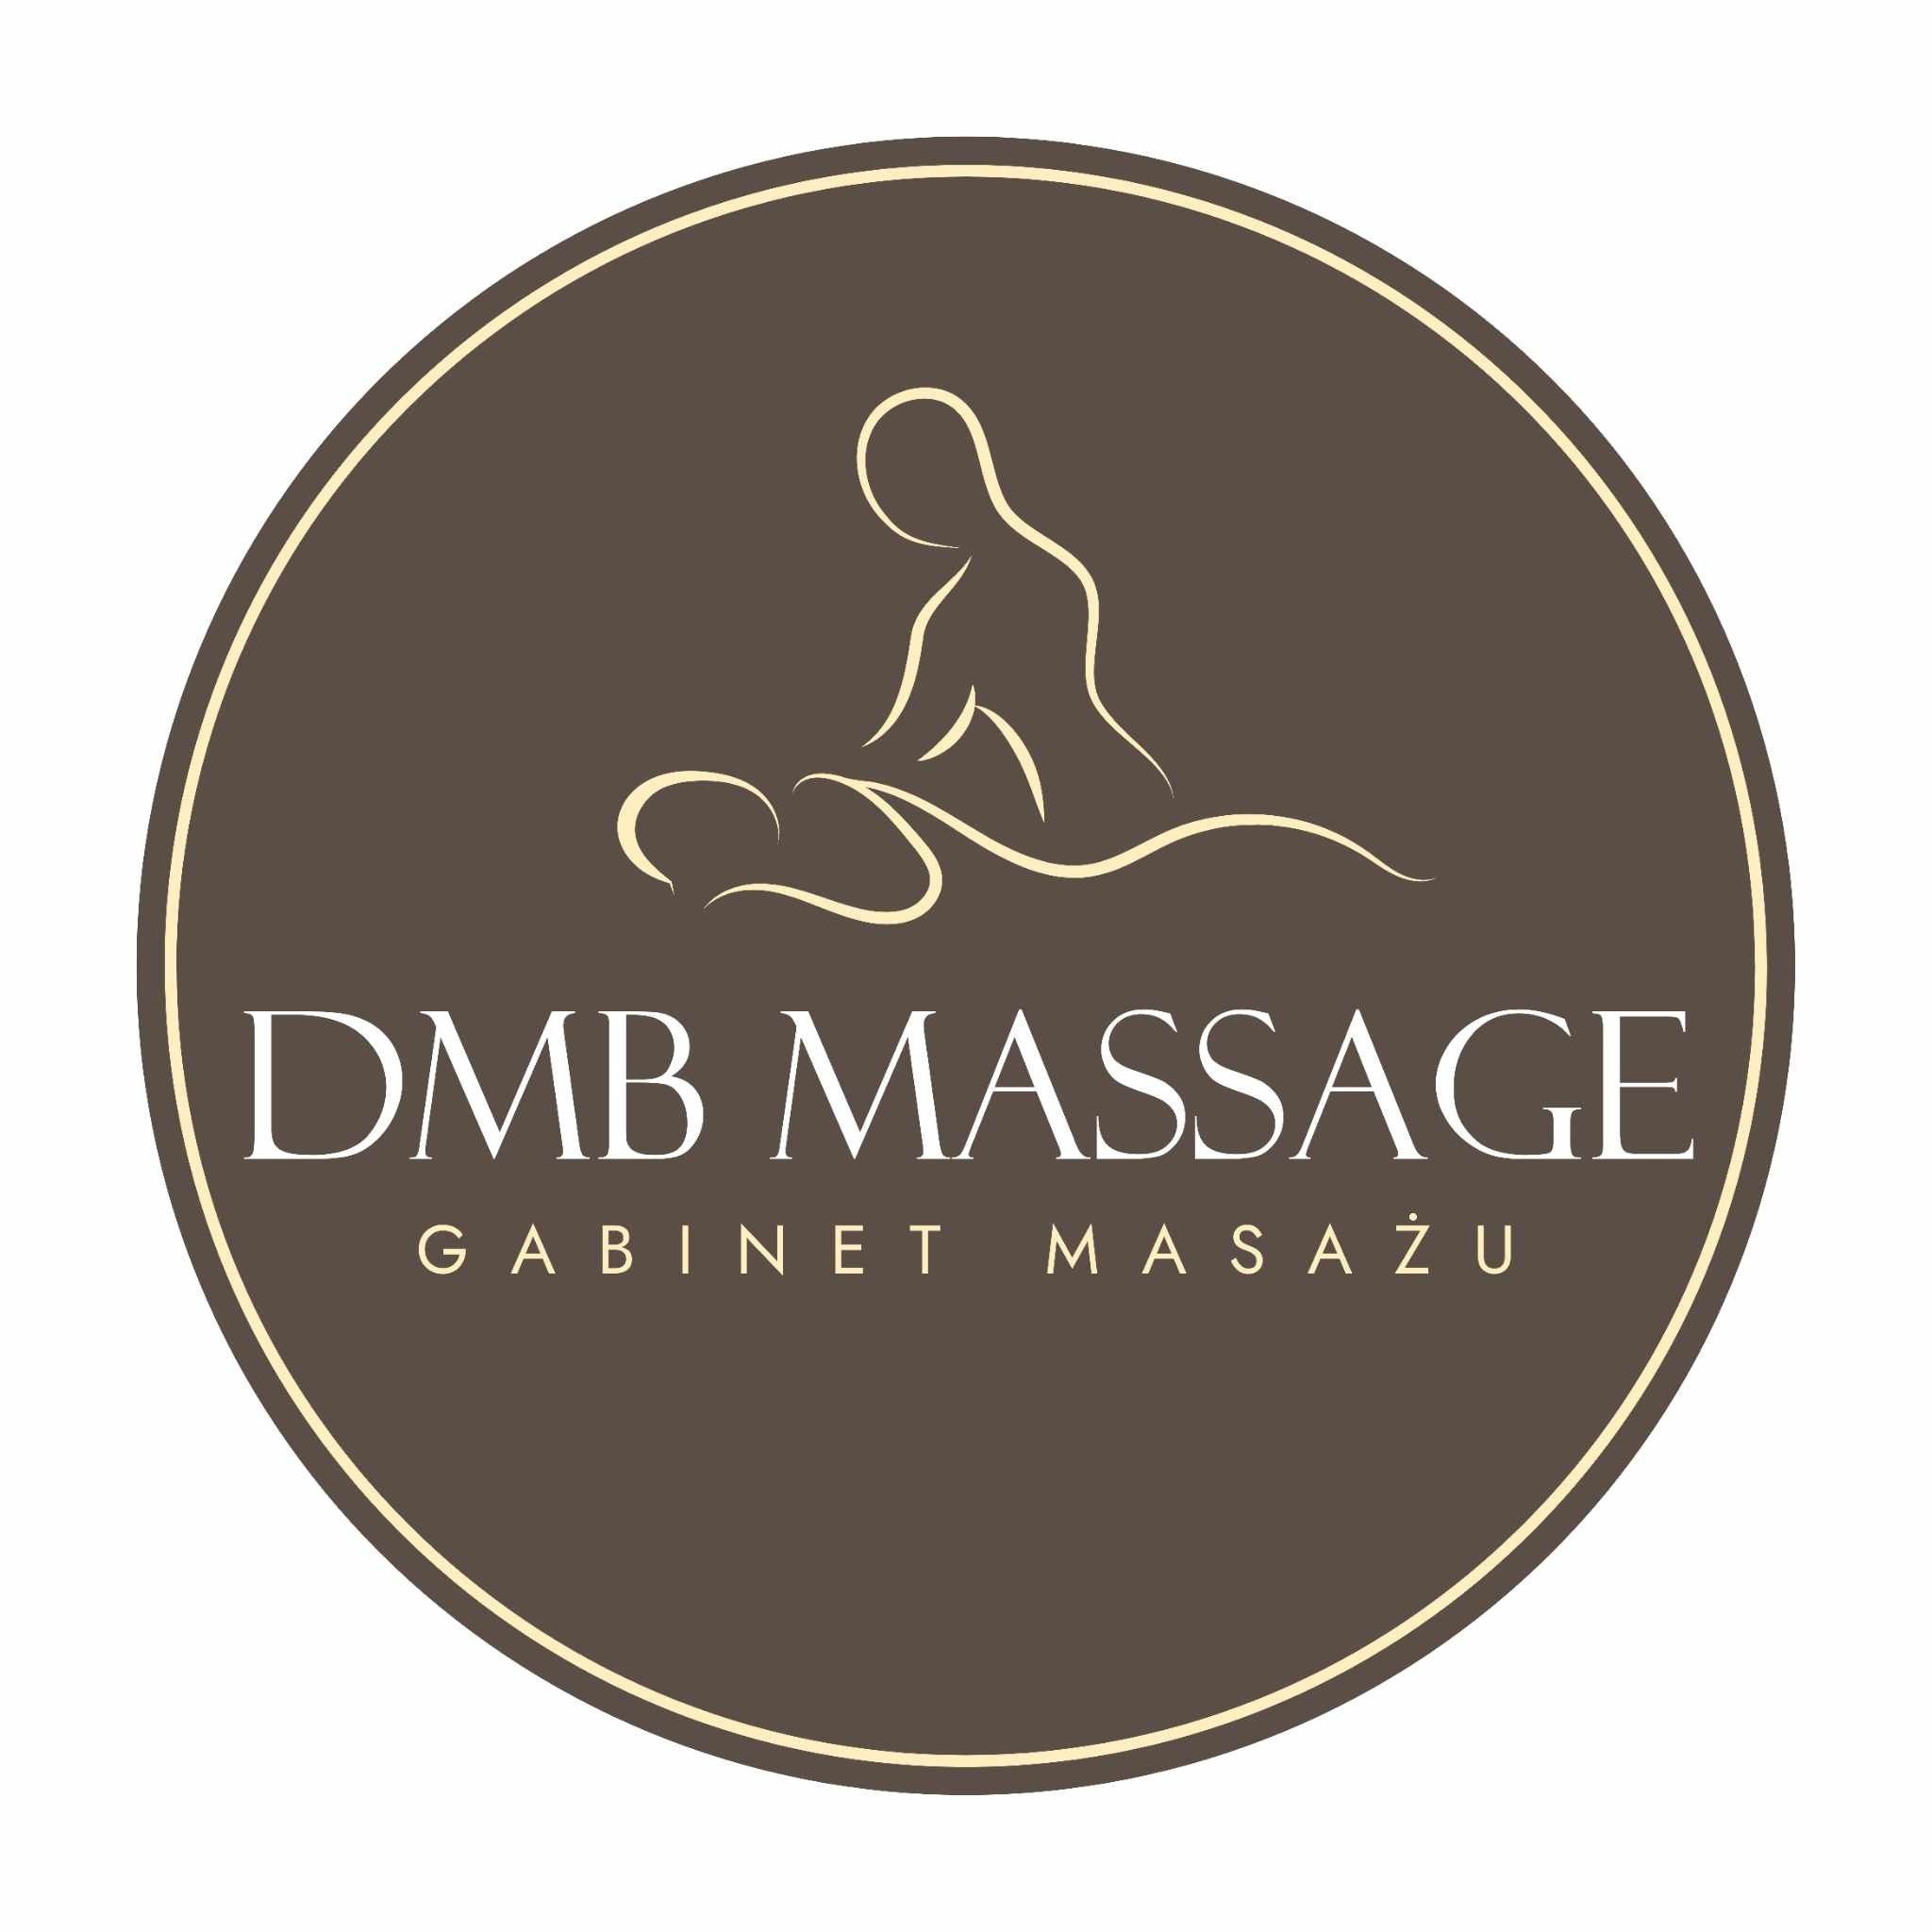 Gabinet Masażu DMB Massage, Podmiejska 24C, 62-800, Kalisz